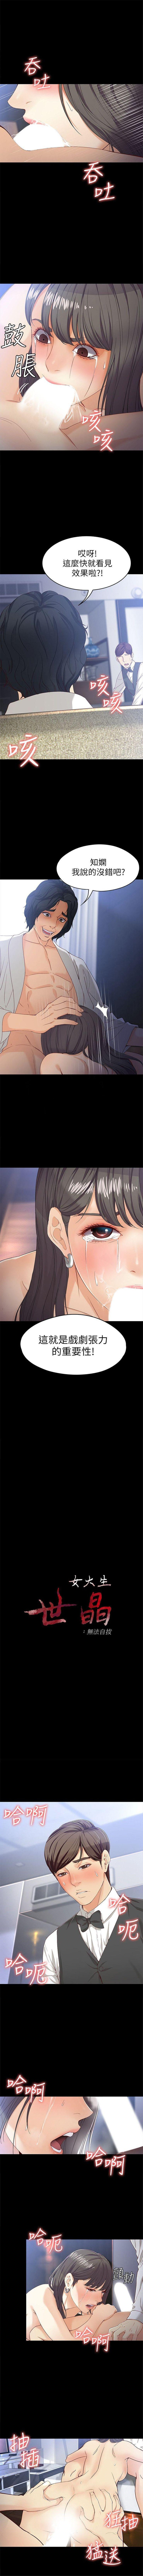 女大生世晶:无法自拔 1-56 中文翻译 （完结） 180